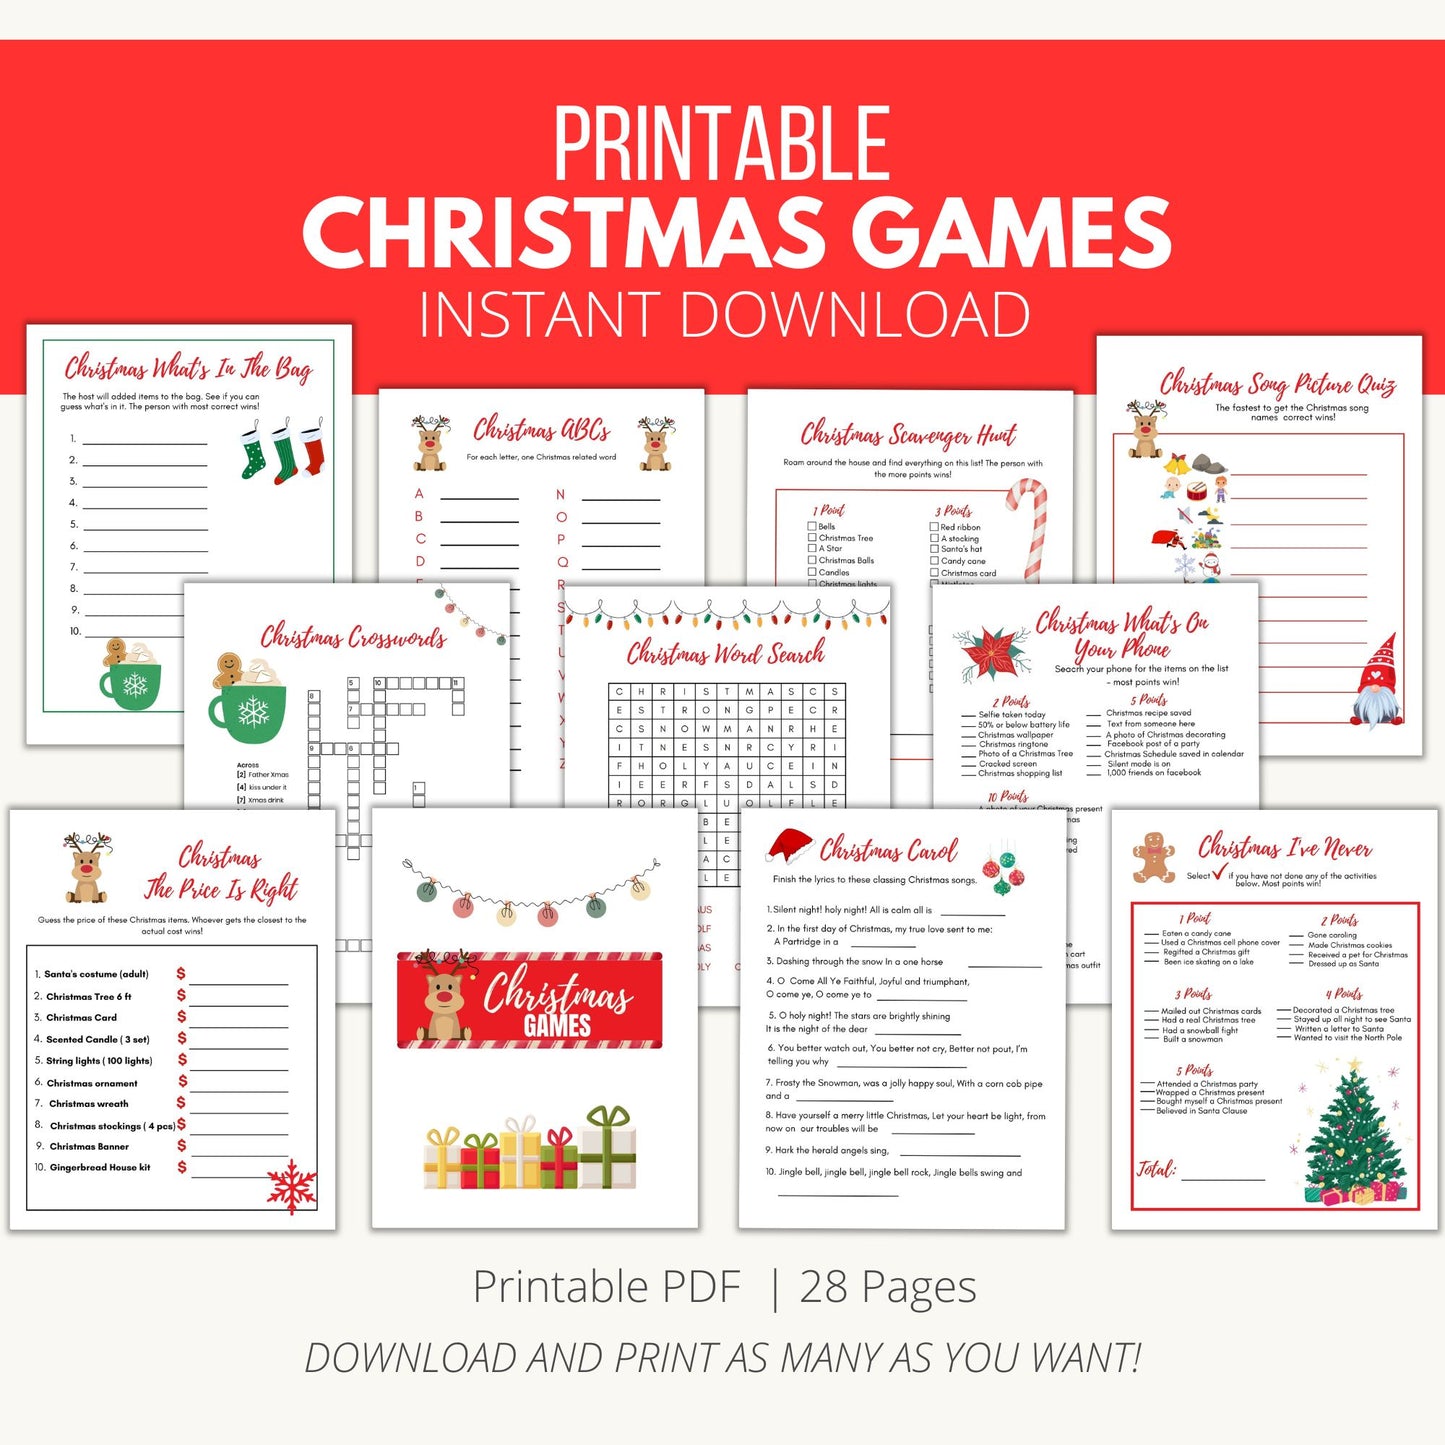 Printable Christmas Games